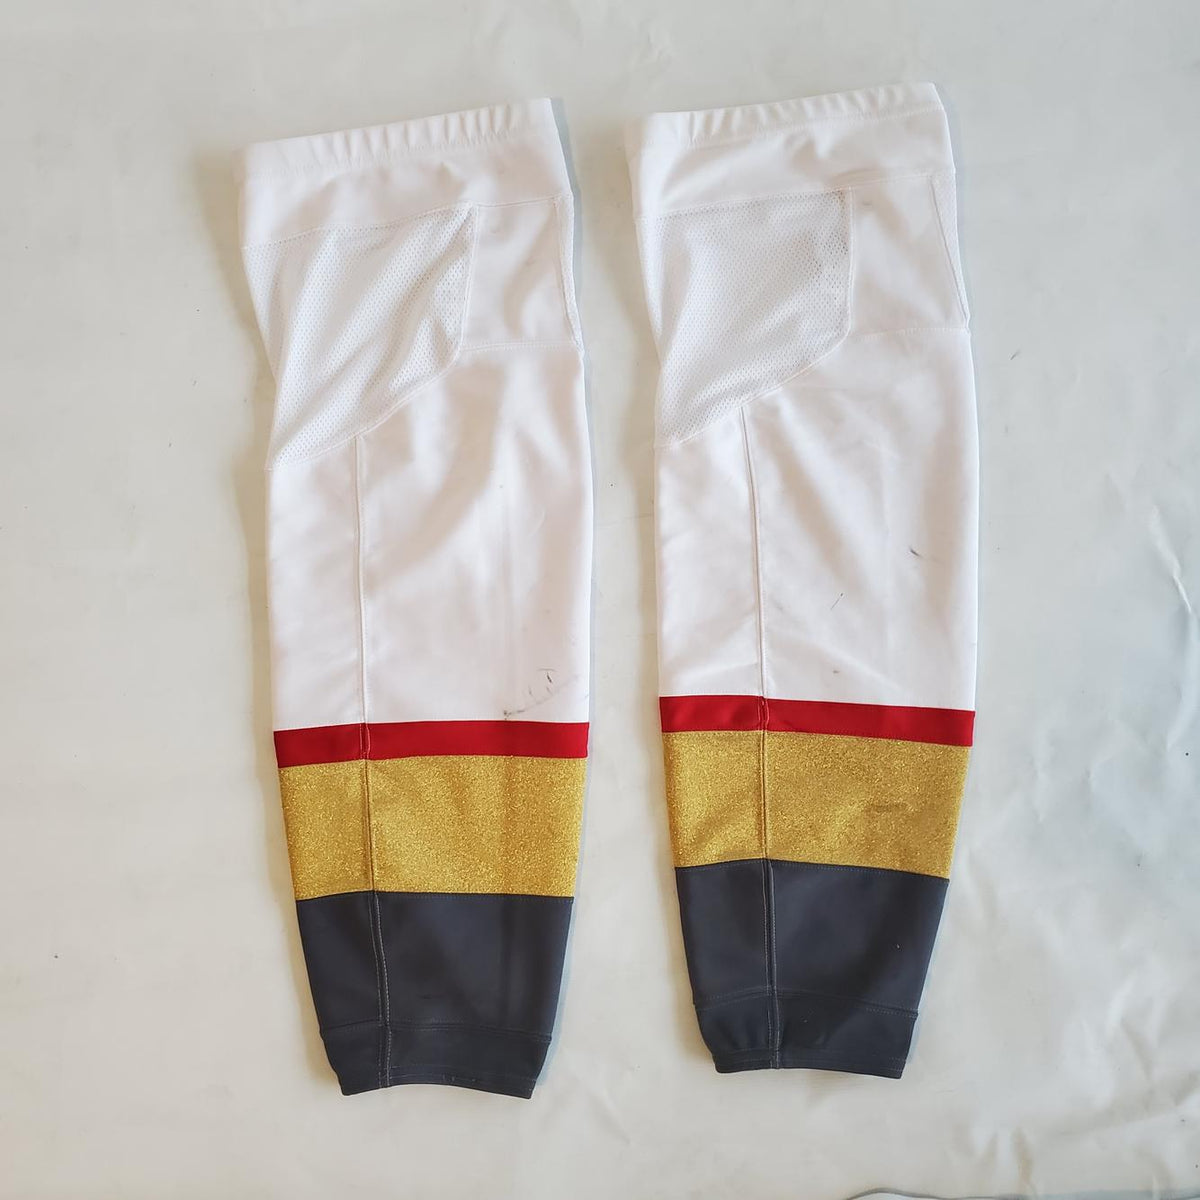  adidas Knit Hockey Sock - Men's Hockey S Black/White